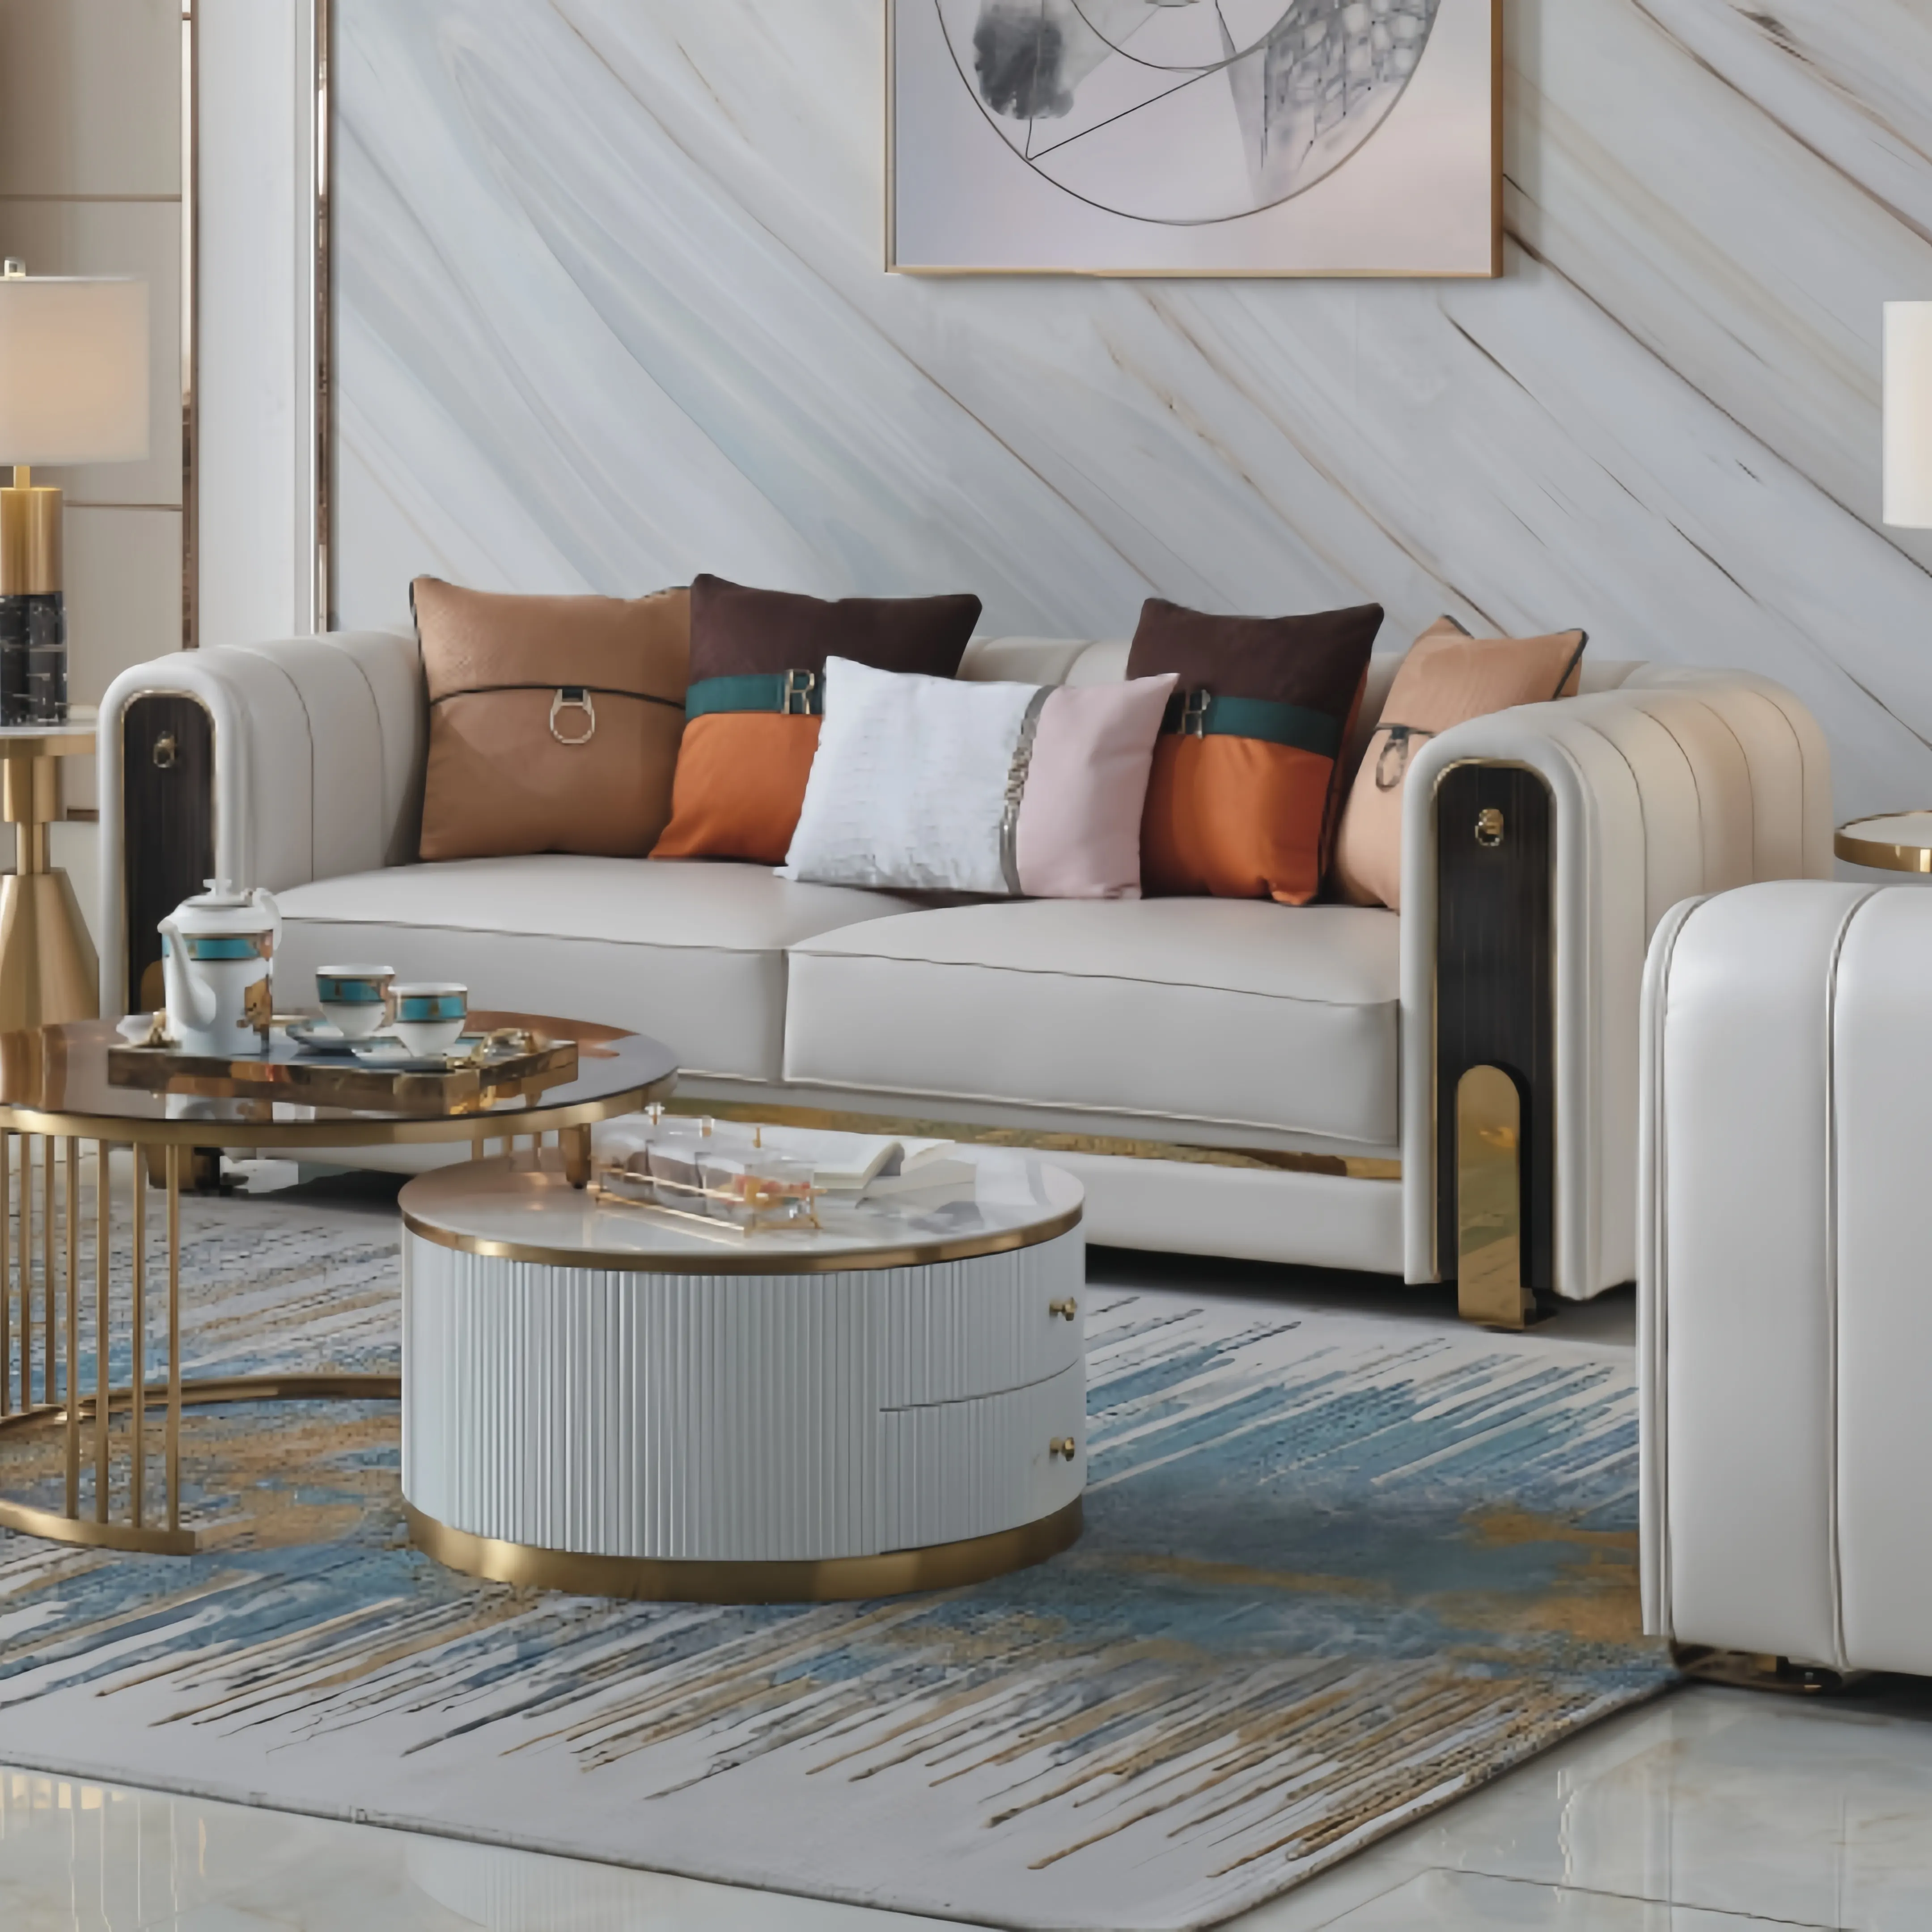 Foshan métal canapé de luxe intérieur moderne tissu Premium intérieur hôtel Villa en cuir modulaire salon meubles canapé ensembles